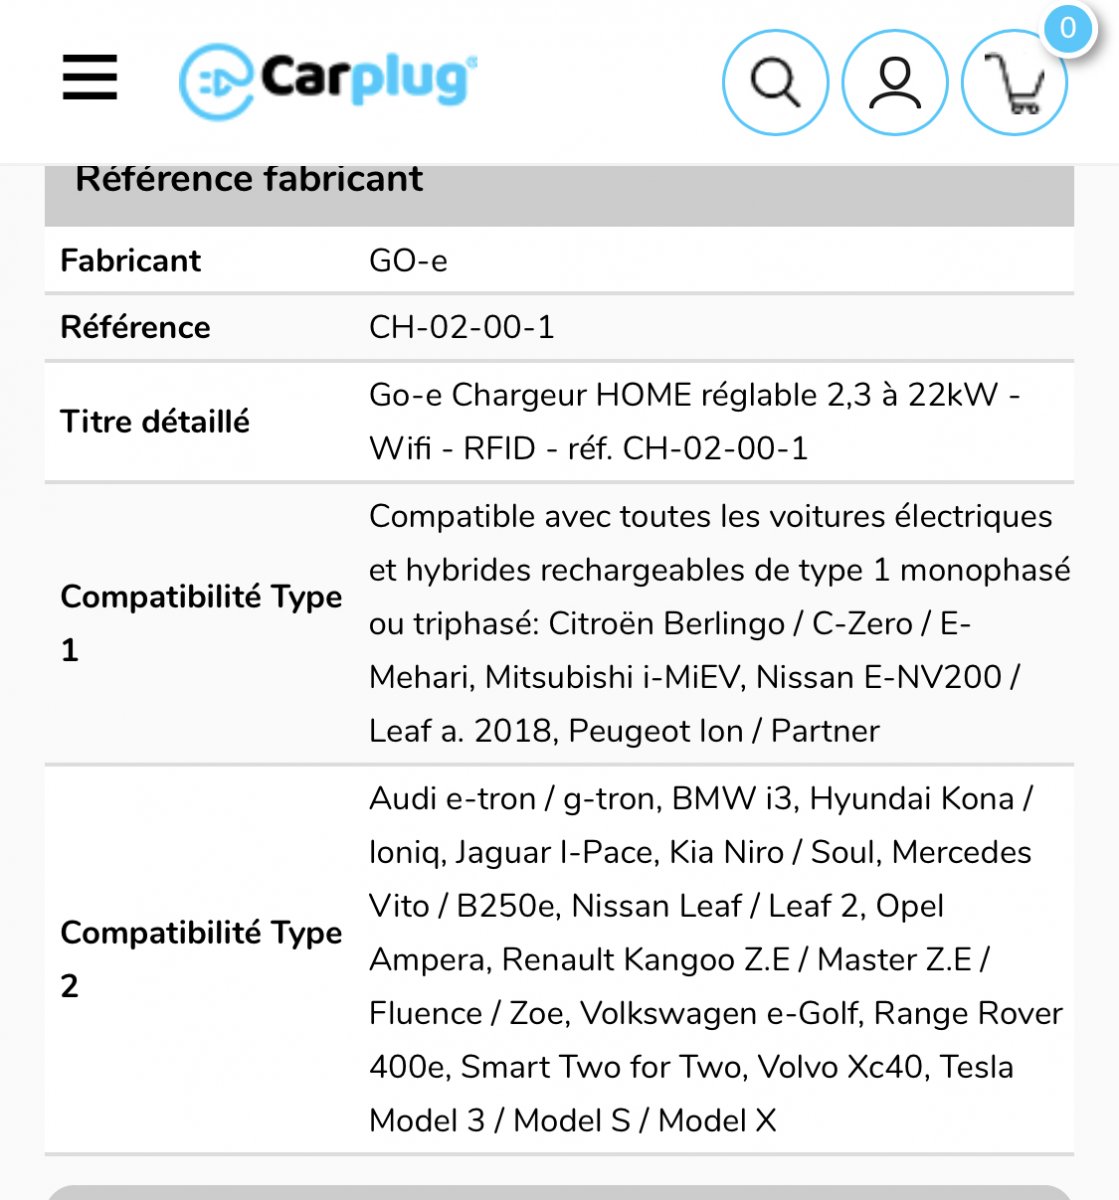 GO-E HOME Chargeur mobile réglable 2,3 à 22kW - Wifi - RFID - Belgique  Suisse - réf. CH-02-00-1